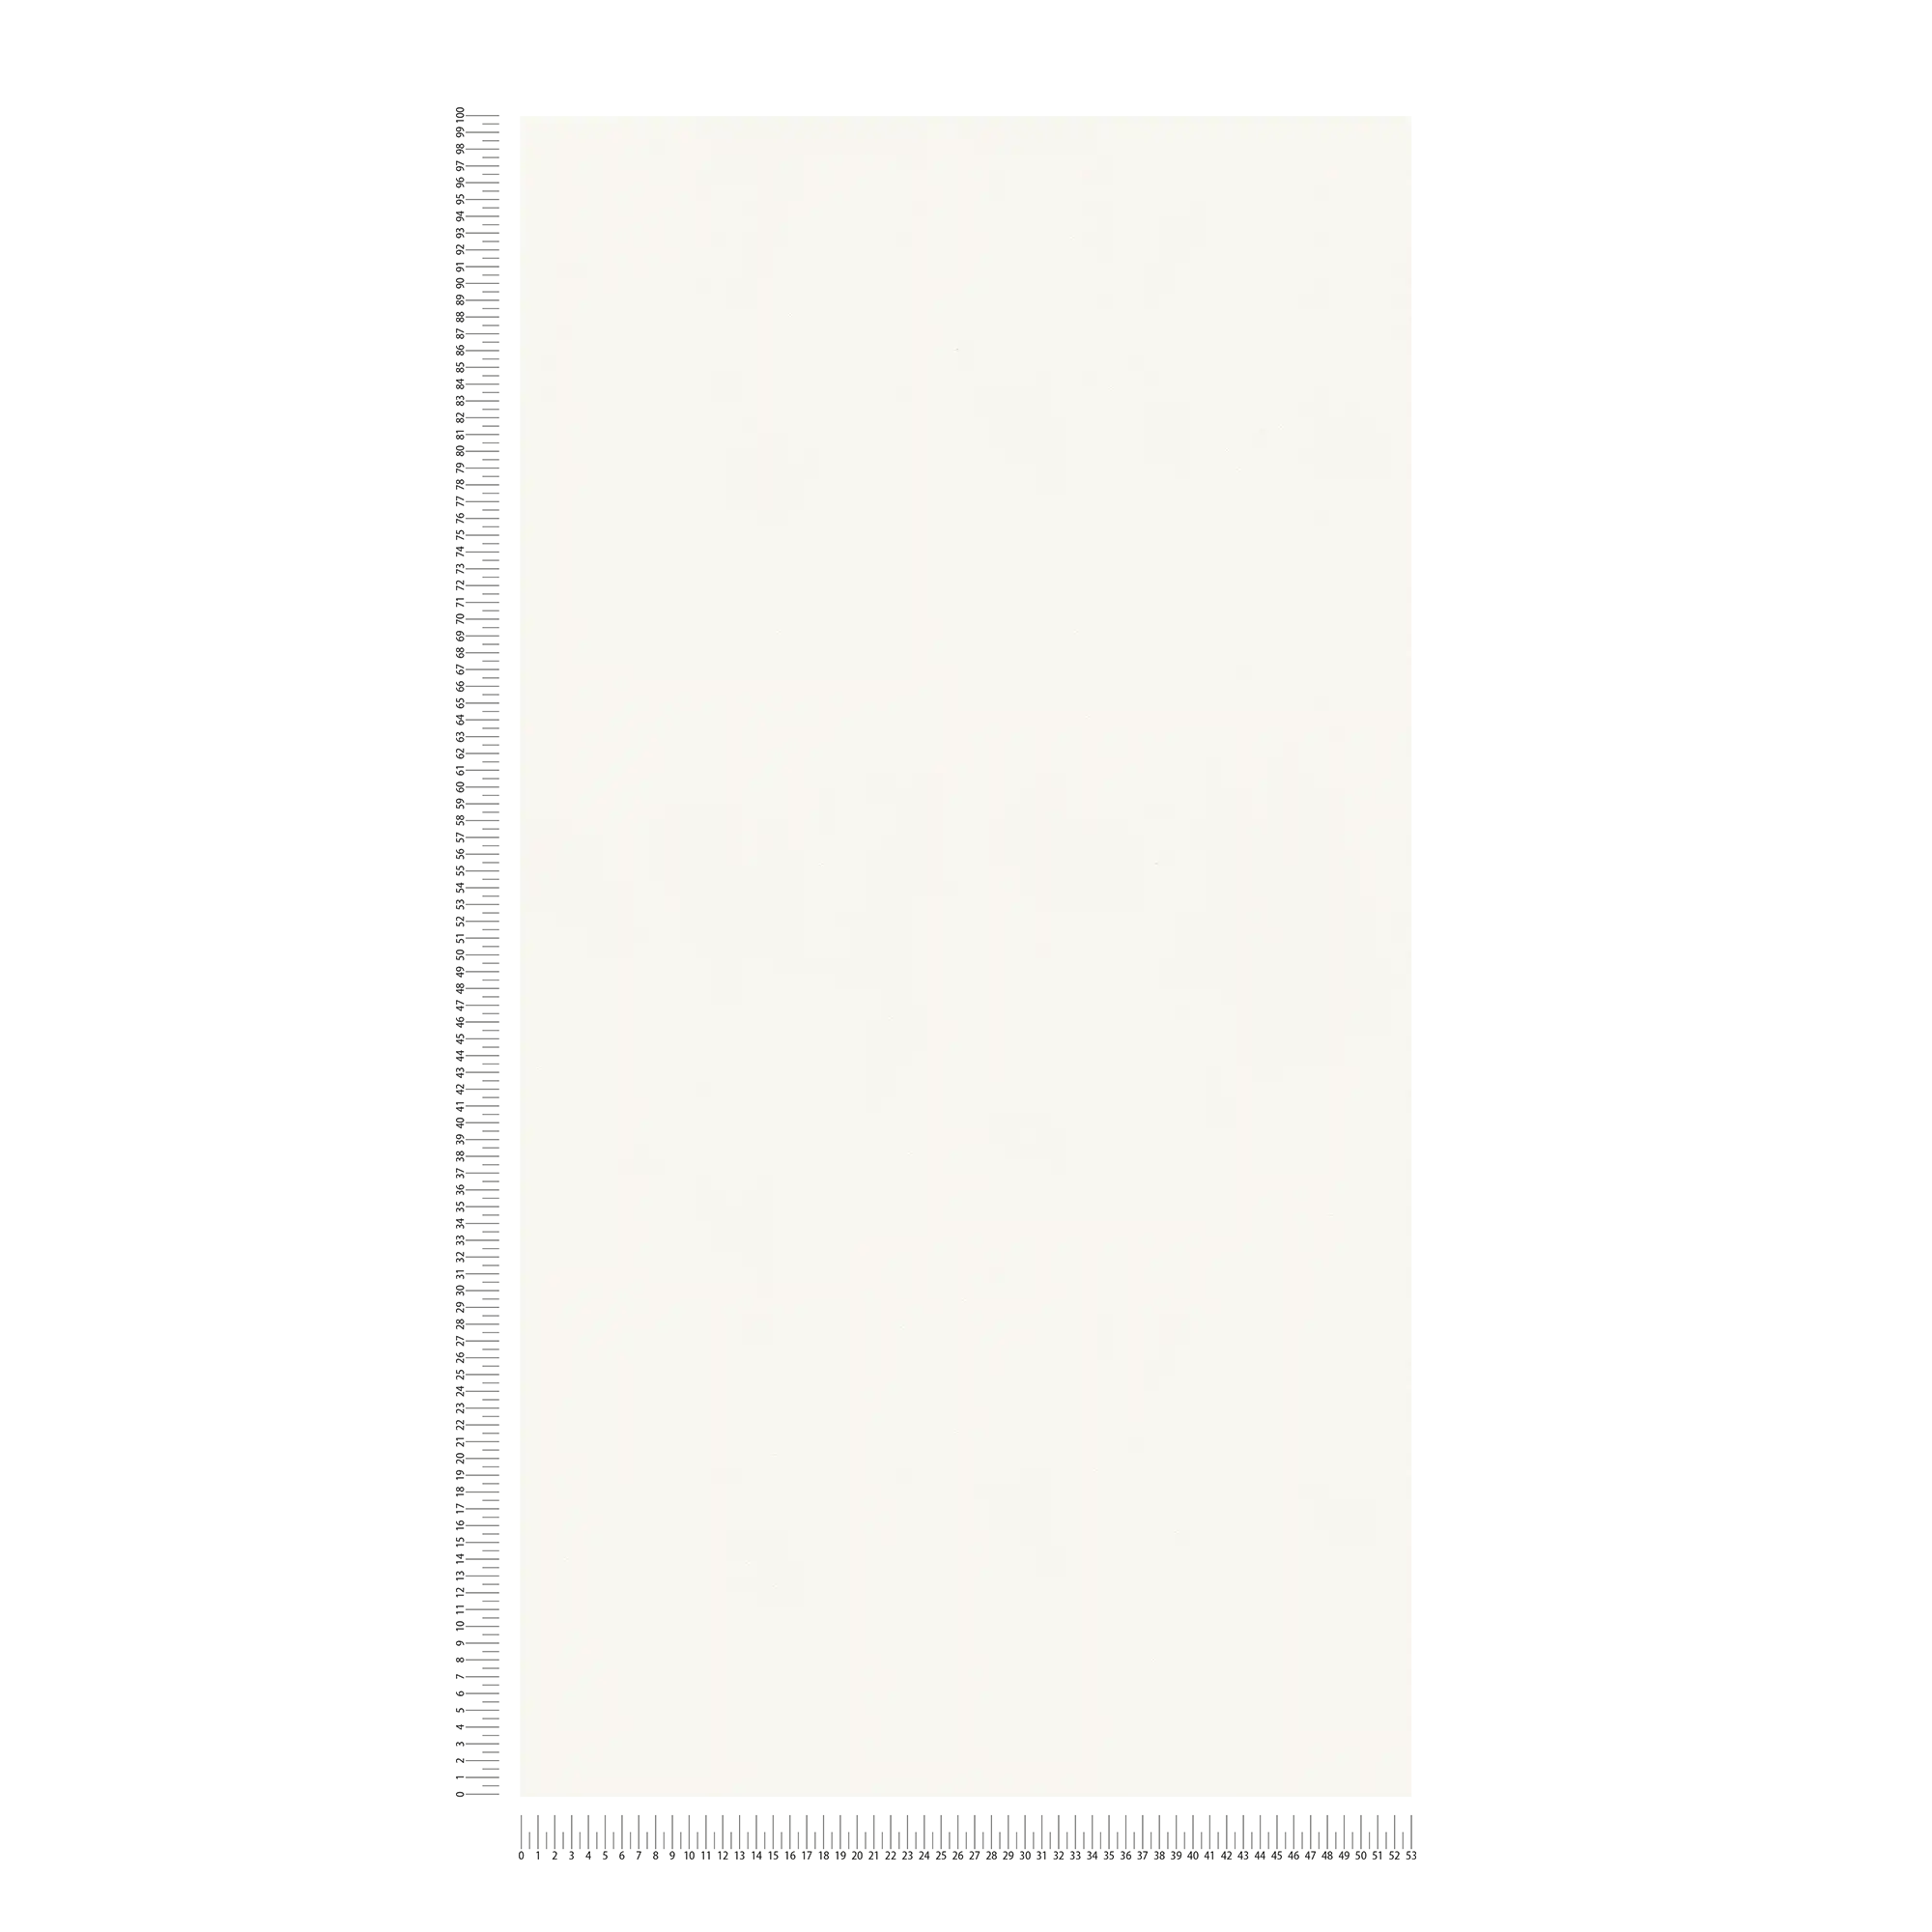             Silk matte non-woven wallpaper white uni with flat structure
        